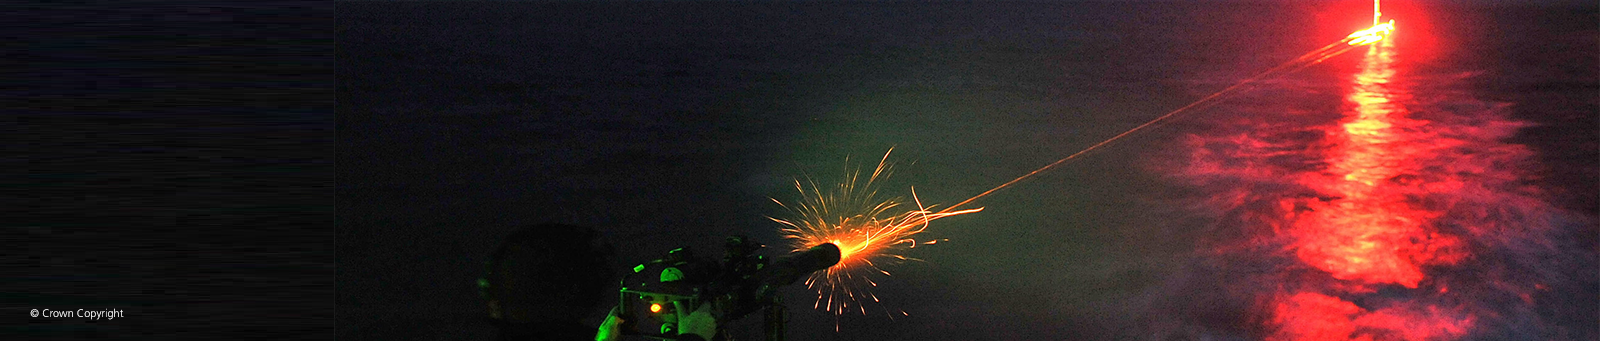 Image of naval minigun firing at night © Crown Copyright